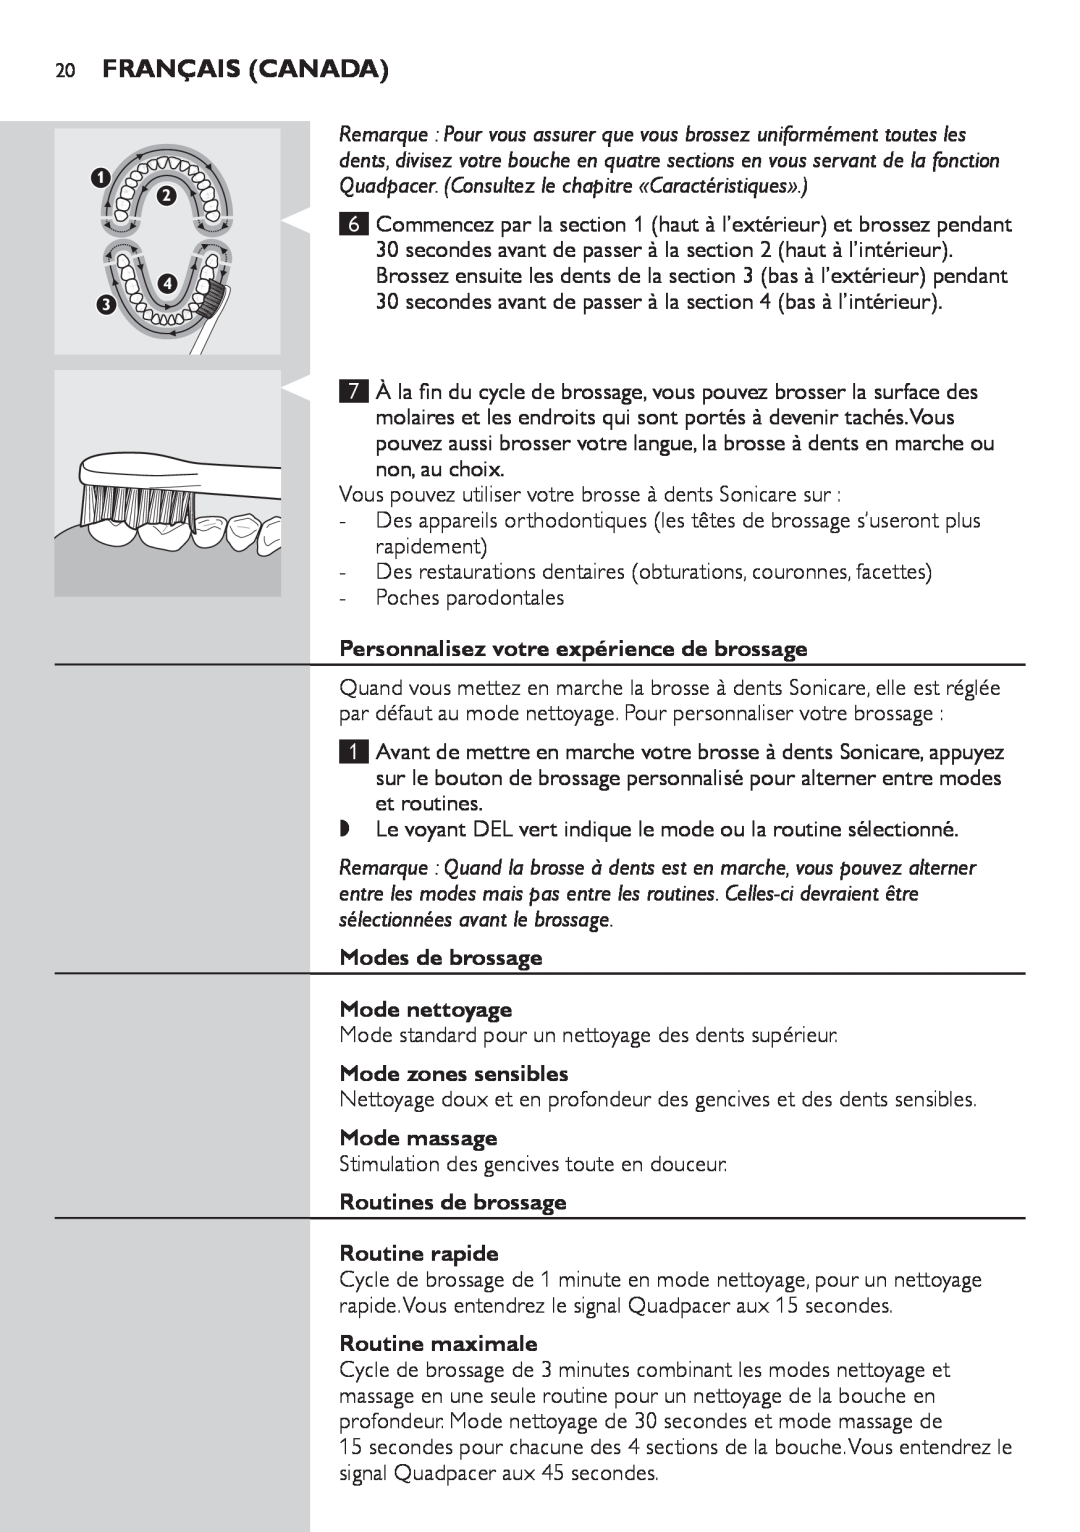 Philips 900 Series manual Français Canada, Personnalisez votre expérience de brossage, Modes de brossage Mode nettoyage 